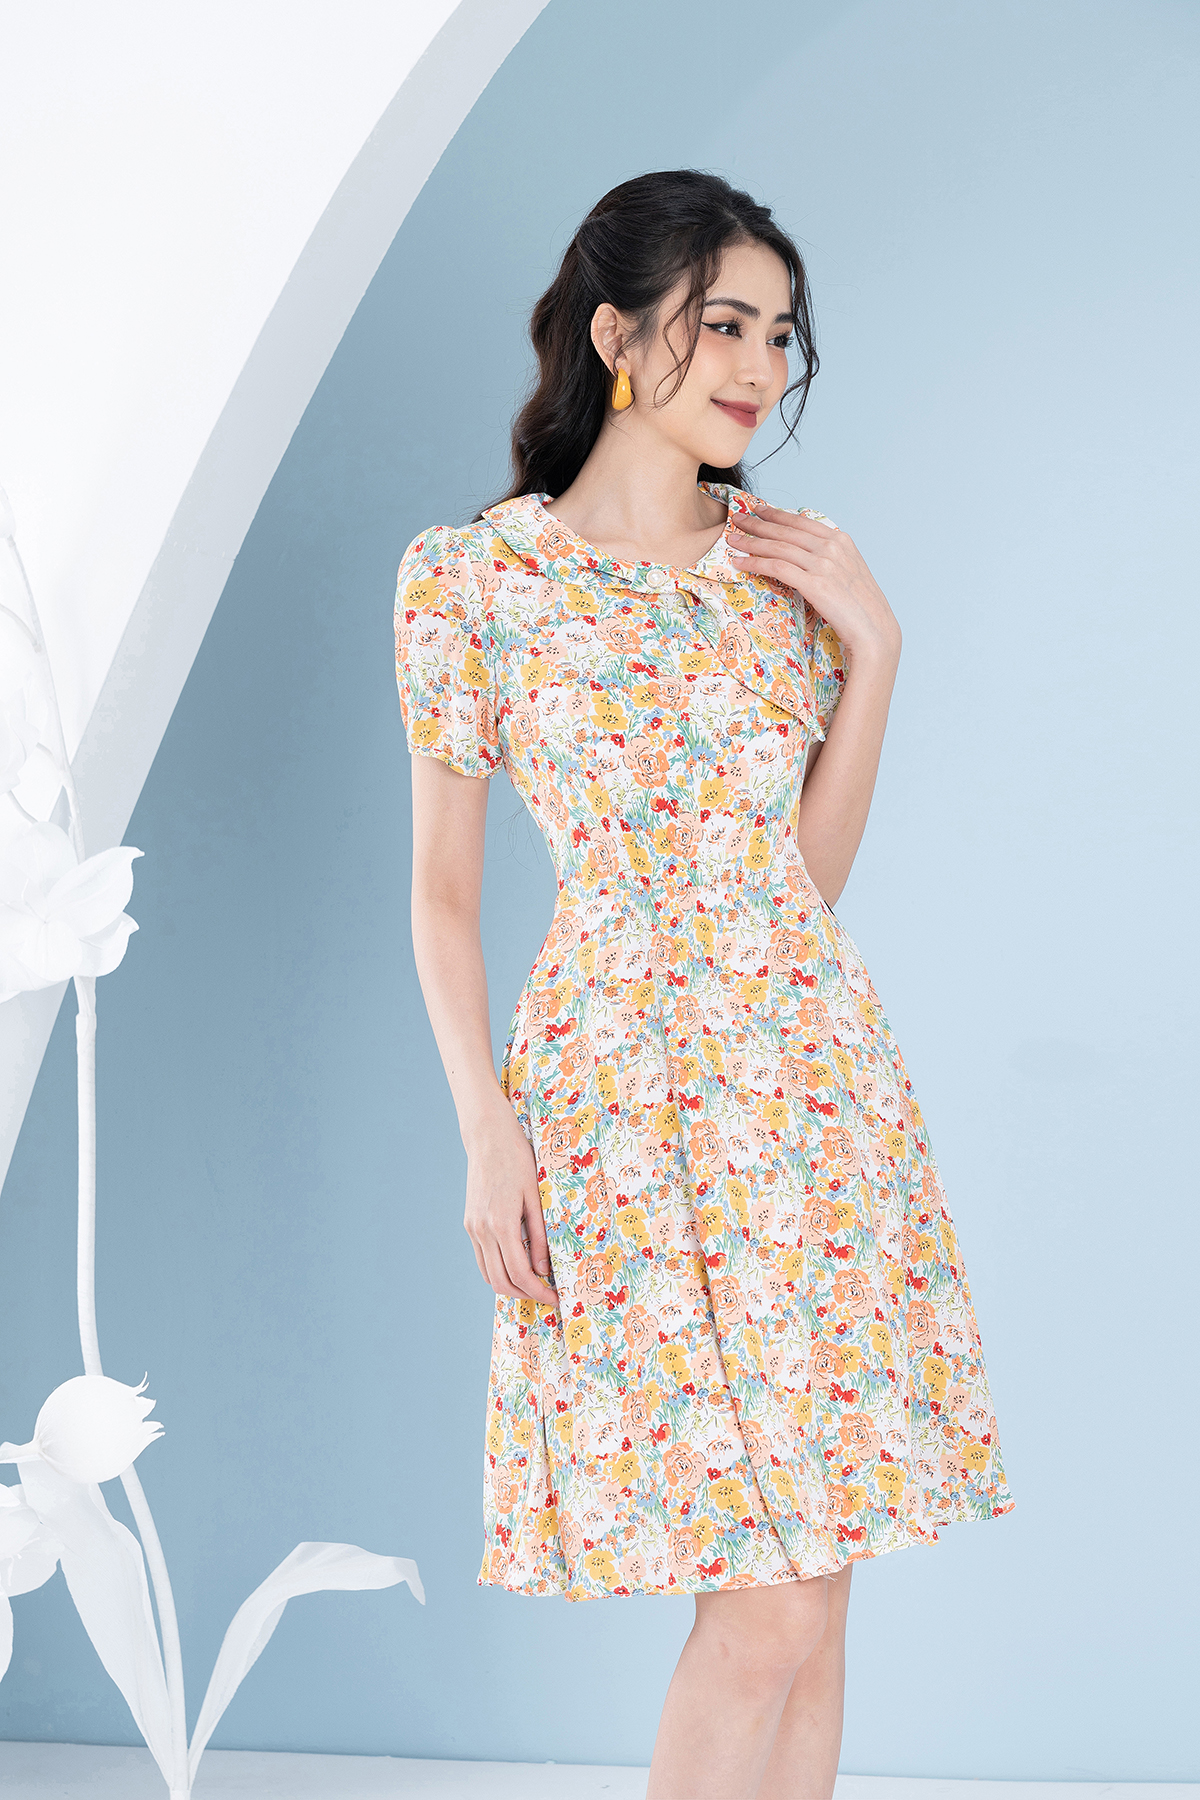 Váy Họa Tiết Hoa Hồng Phối Cổ Nơ Xinh Xắn Luperi LFV3281